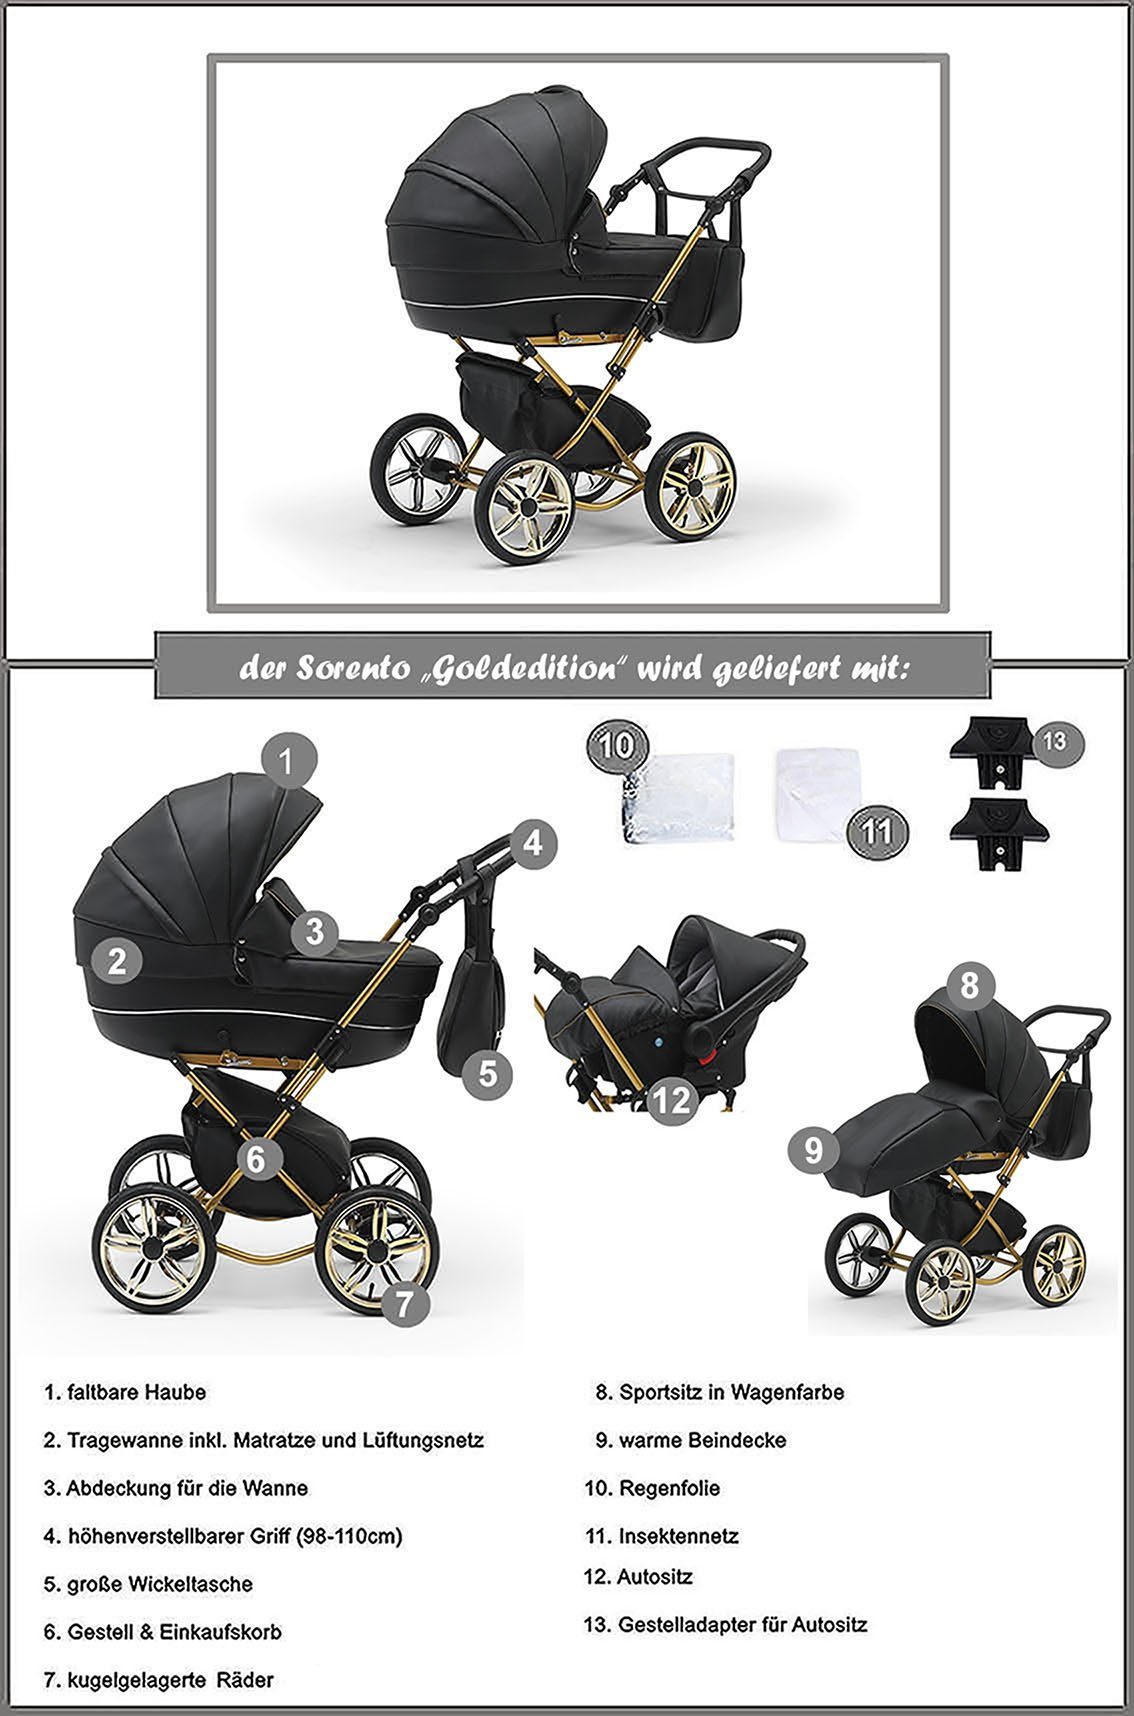 Autositz in 13 - 10 Sorento 3 Designs - in Kombi-Kinderwagen Beige 1 babies-on-wheels Teile inkl.